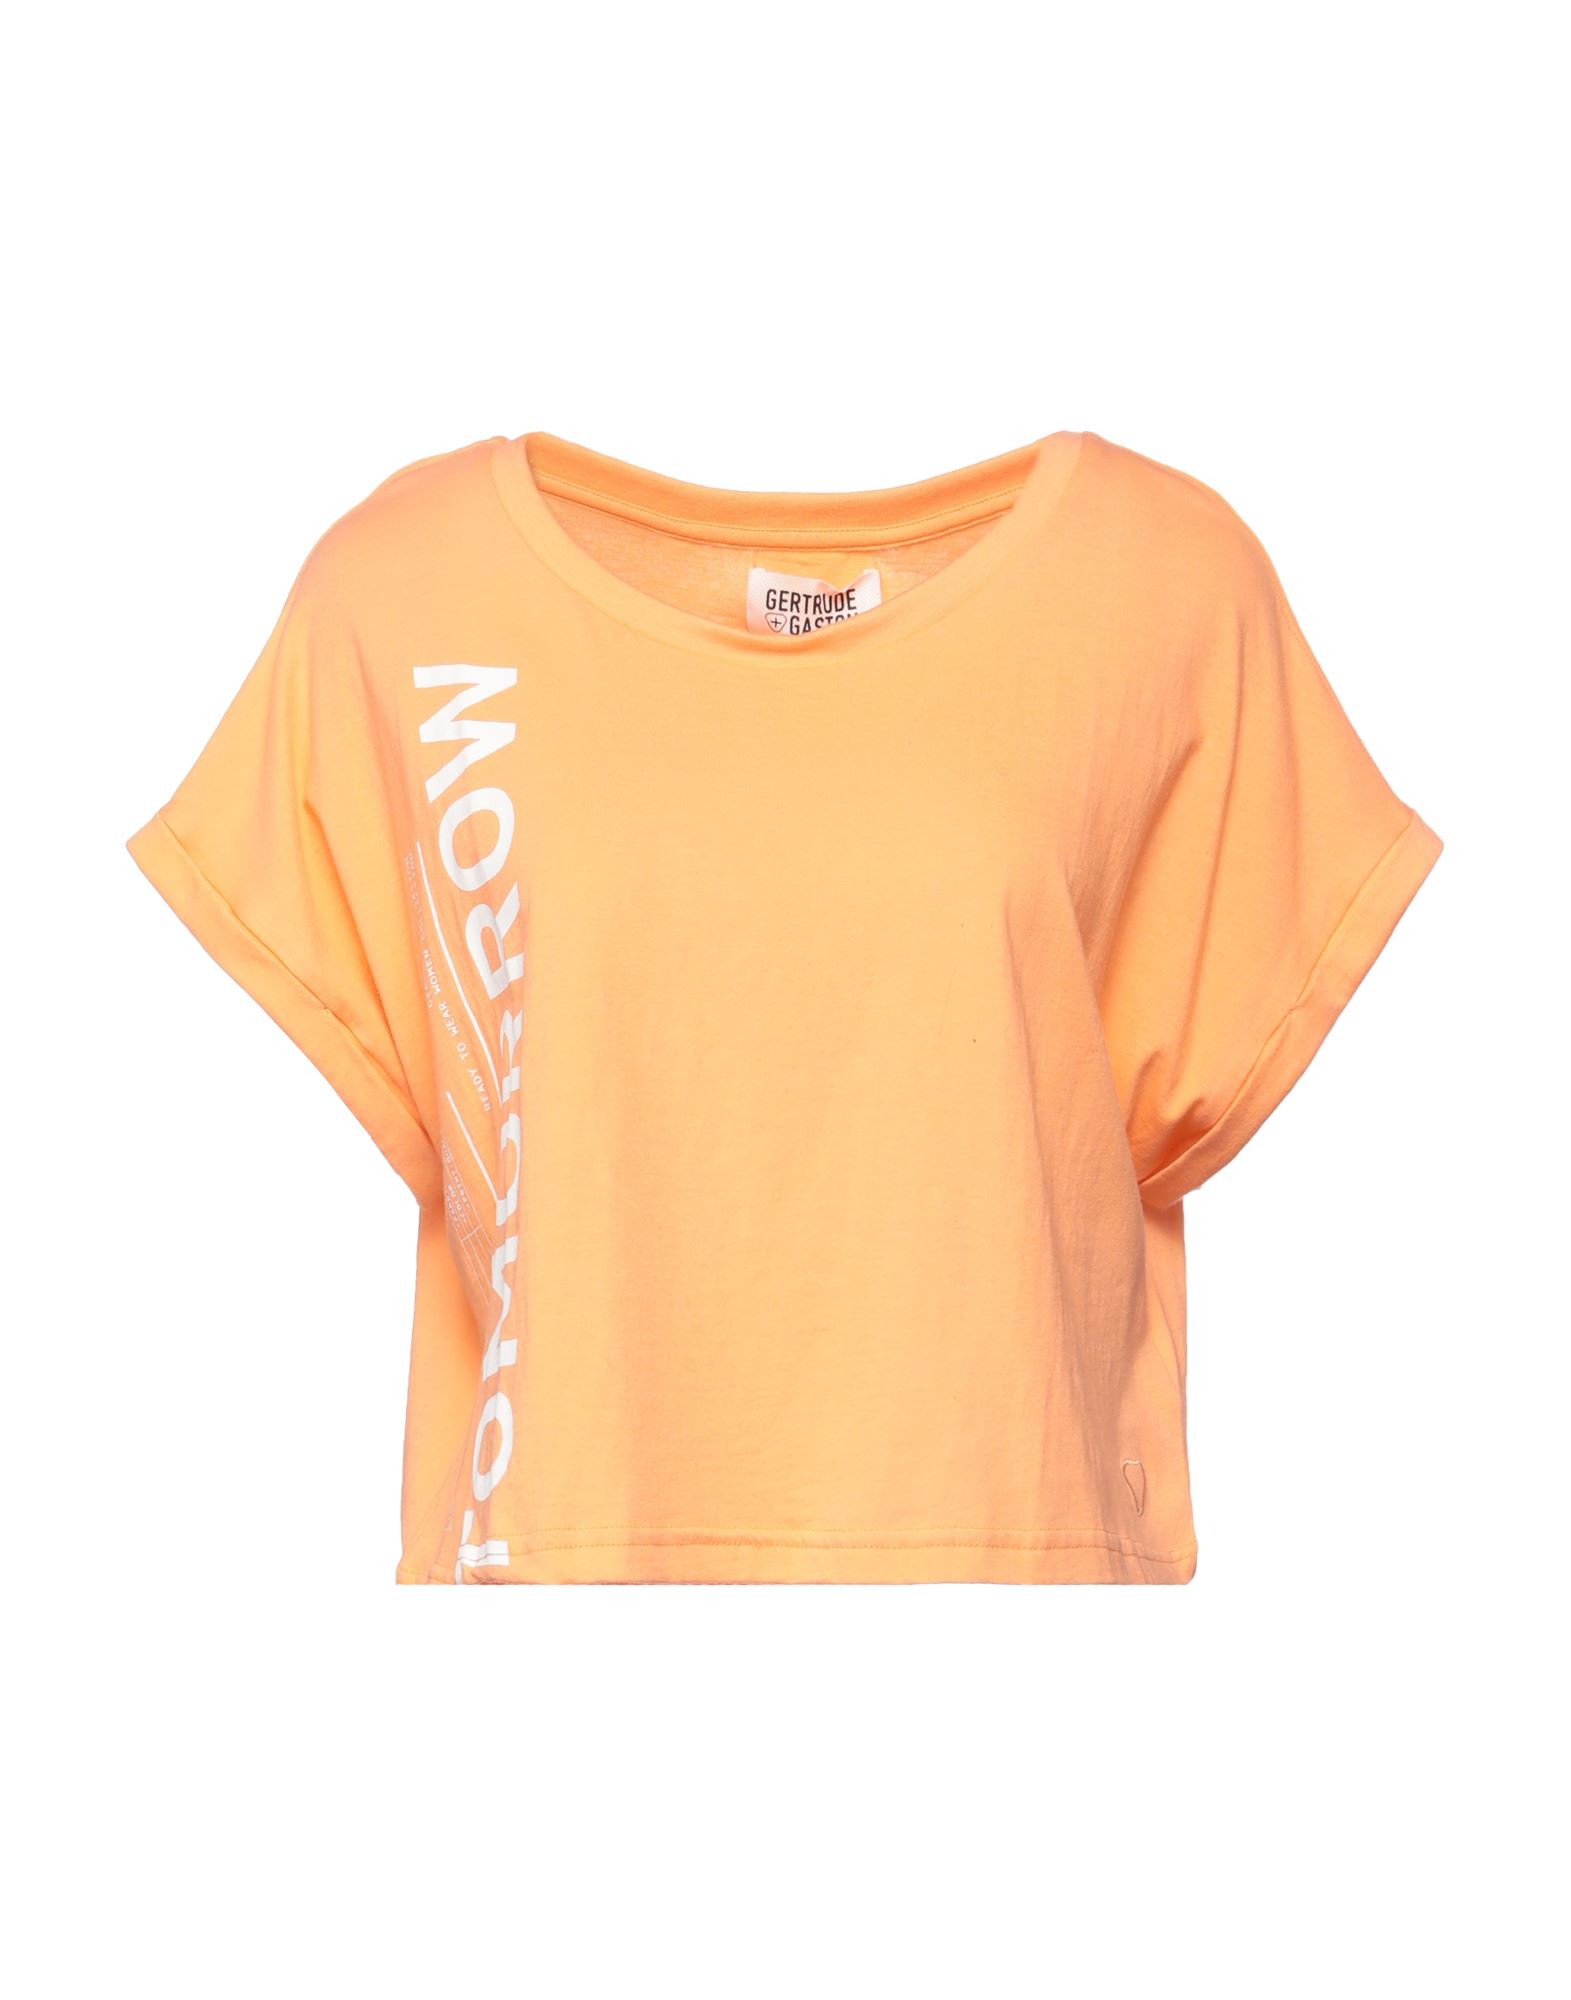 Gertrude + Gaston T-shirts In Orange